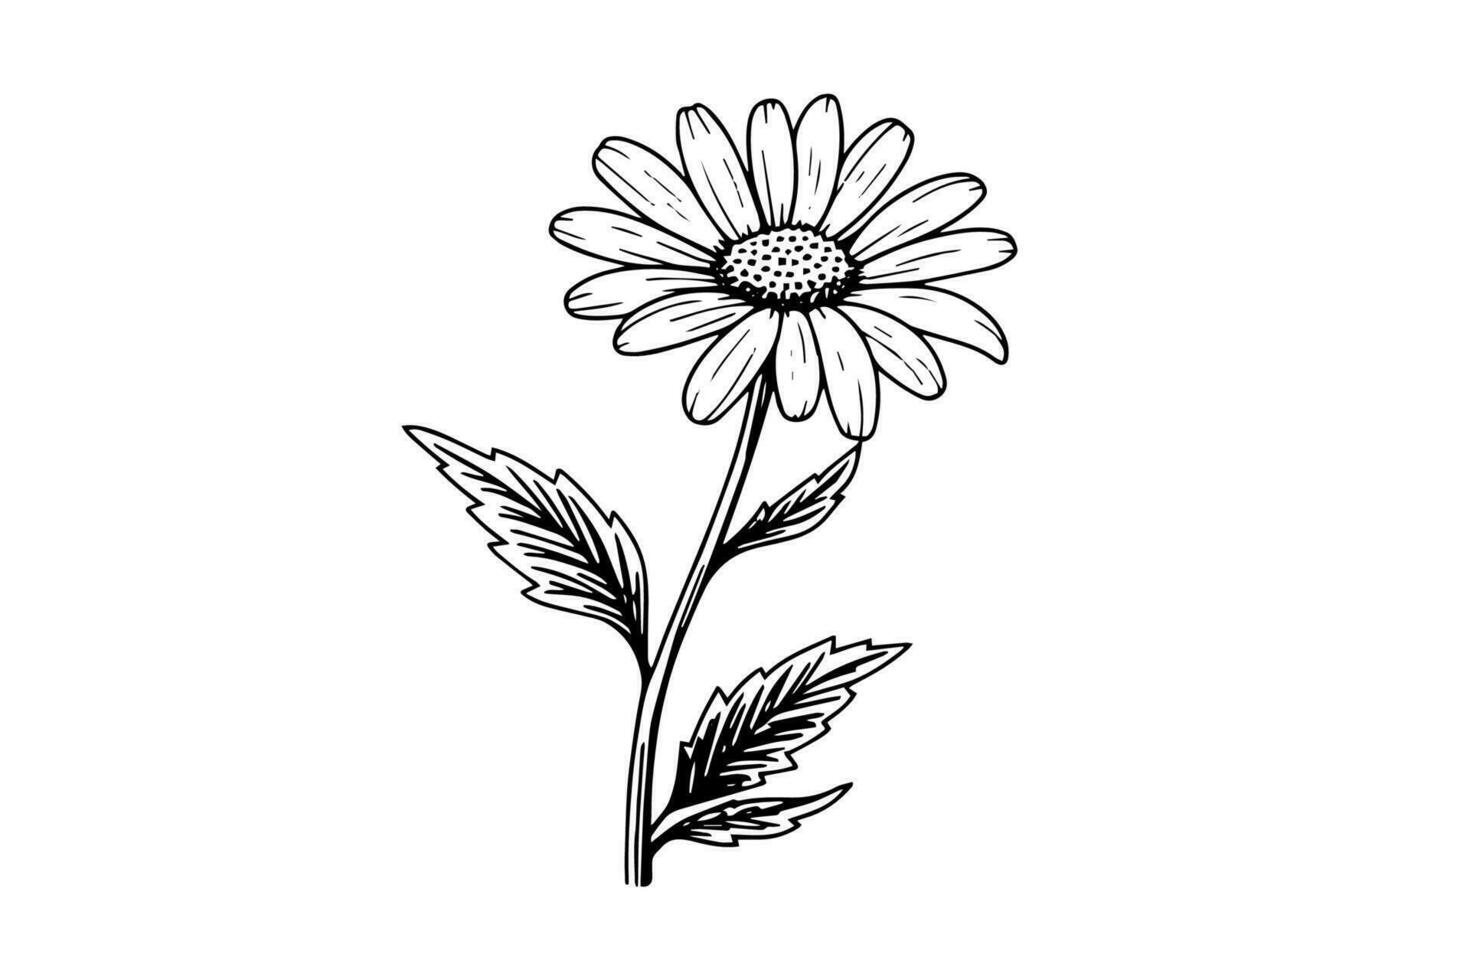 Tanzende Blume ist auf weißem Hintergrund.: Stock-Vektorgrafik (Lizenzfrei)  2293770371